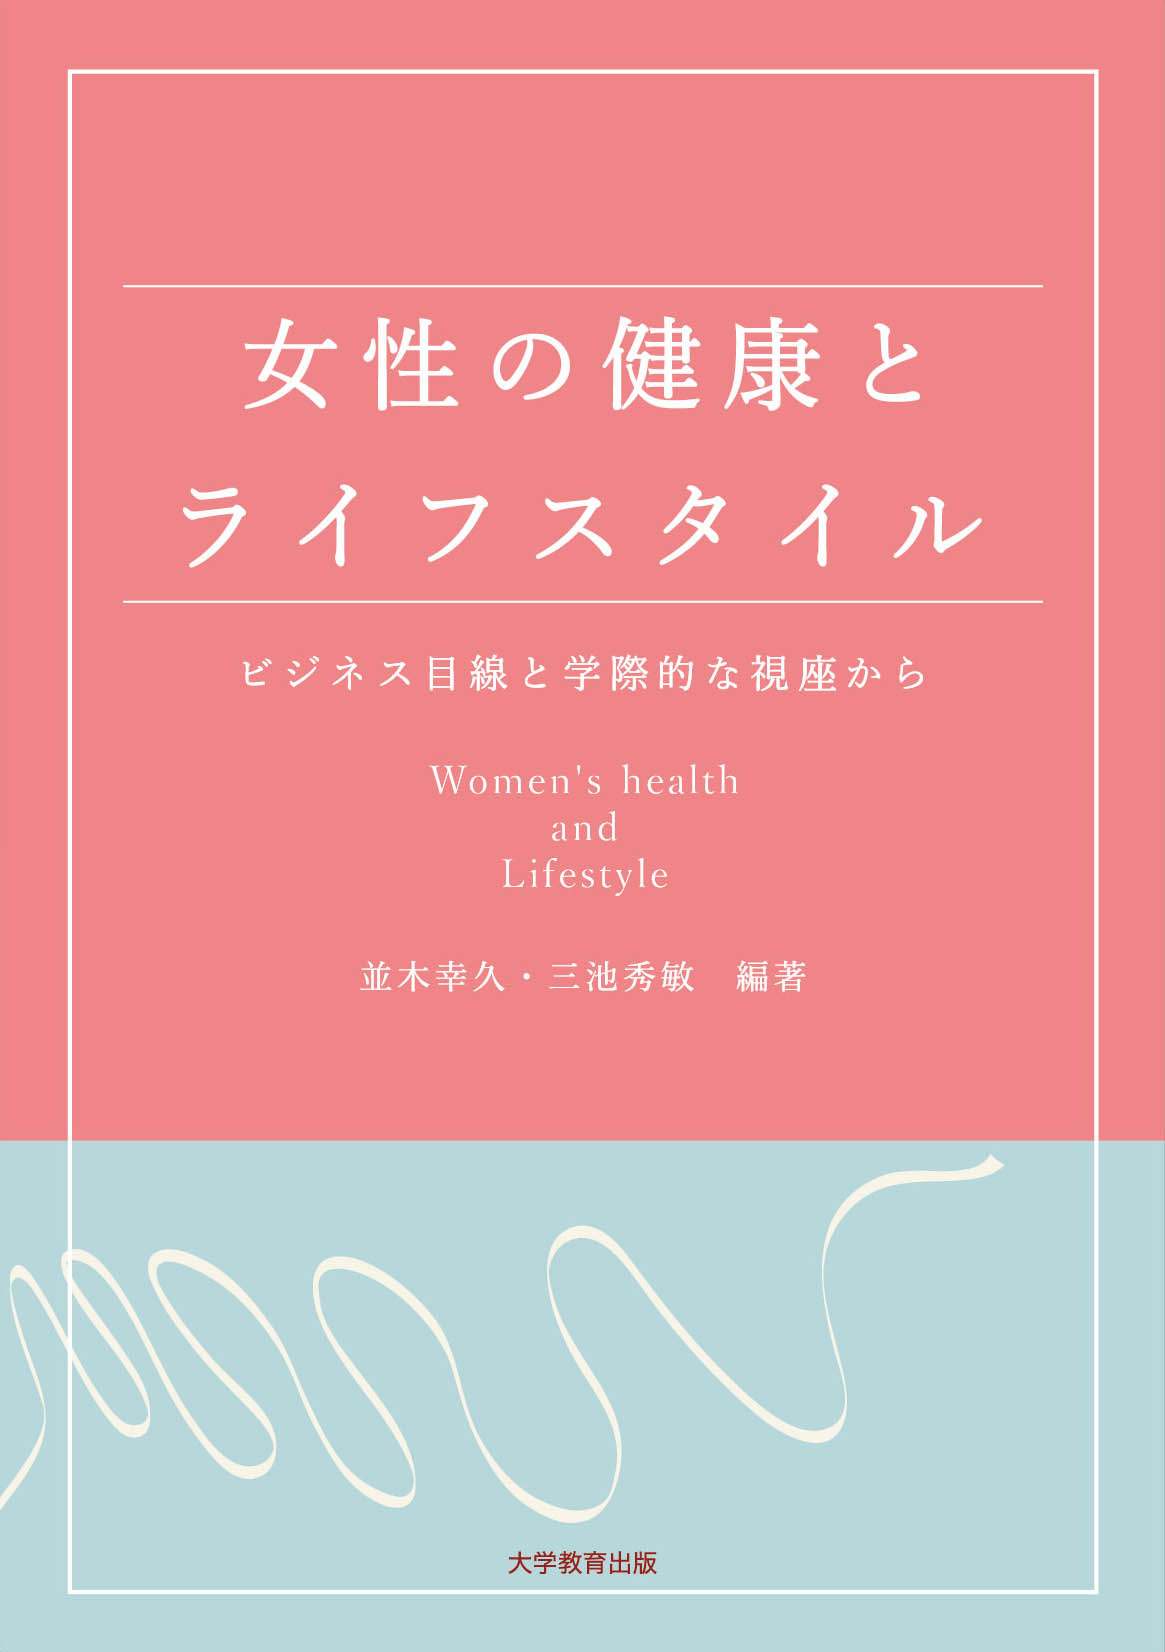 女性の健康とライフスタイル―ビジネス目線と学際的な視座から―の商品画像